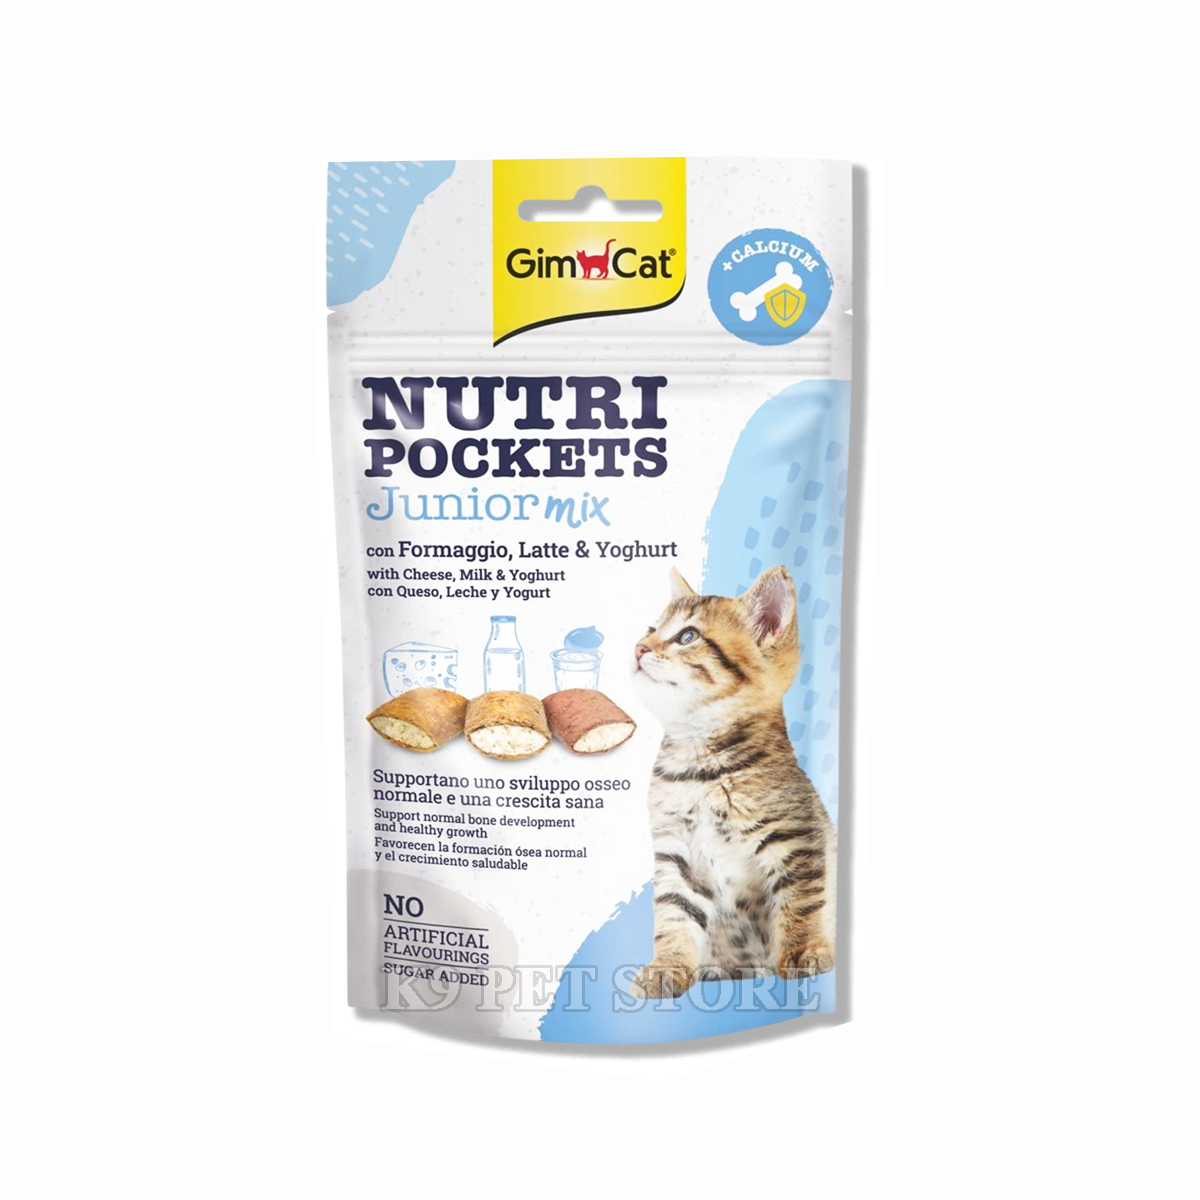 Snack mèo Gimcat Nutri Pockets Junior Mix 60g -  dành cho mèo con